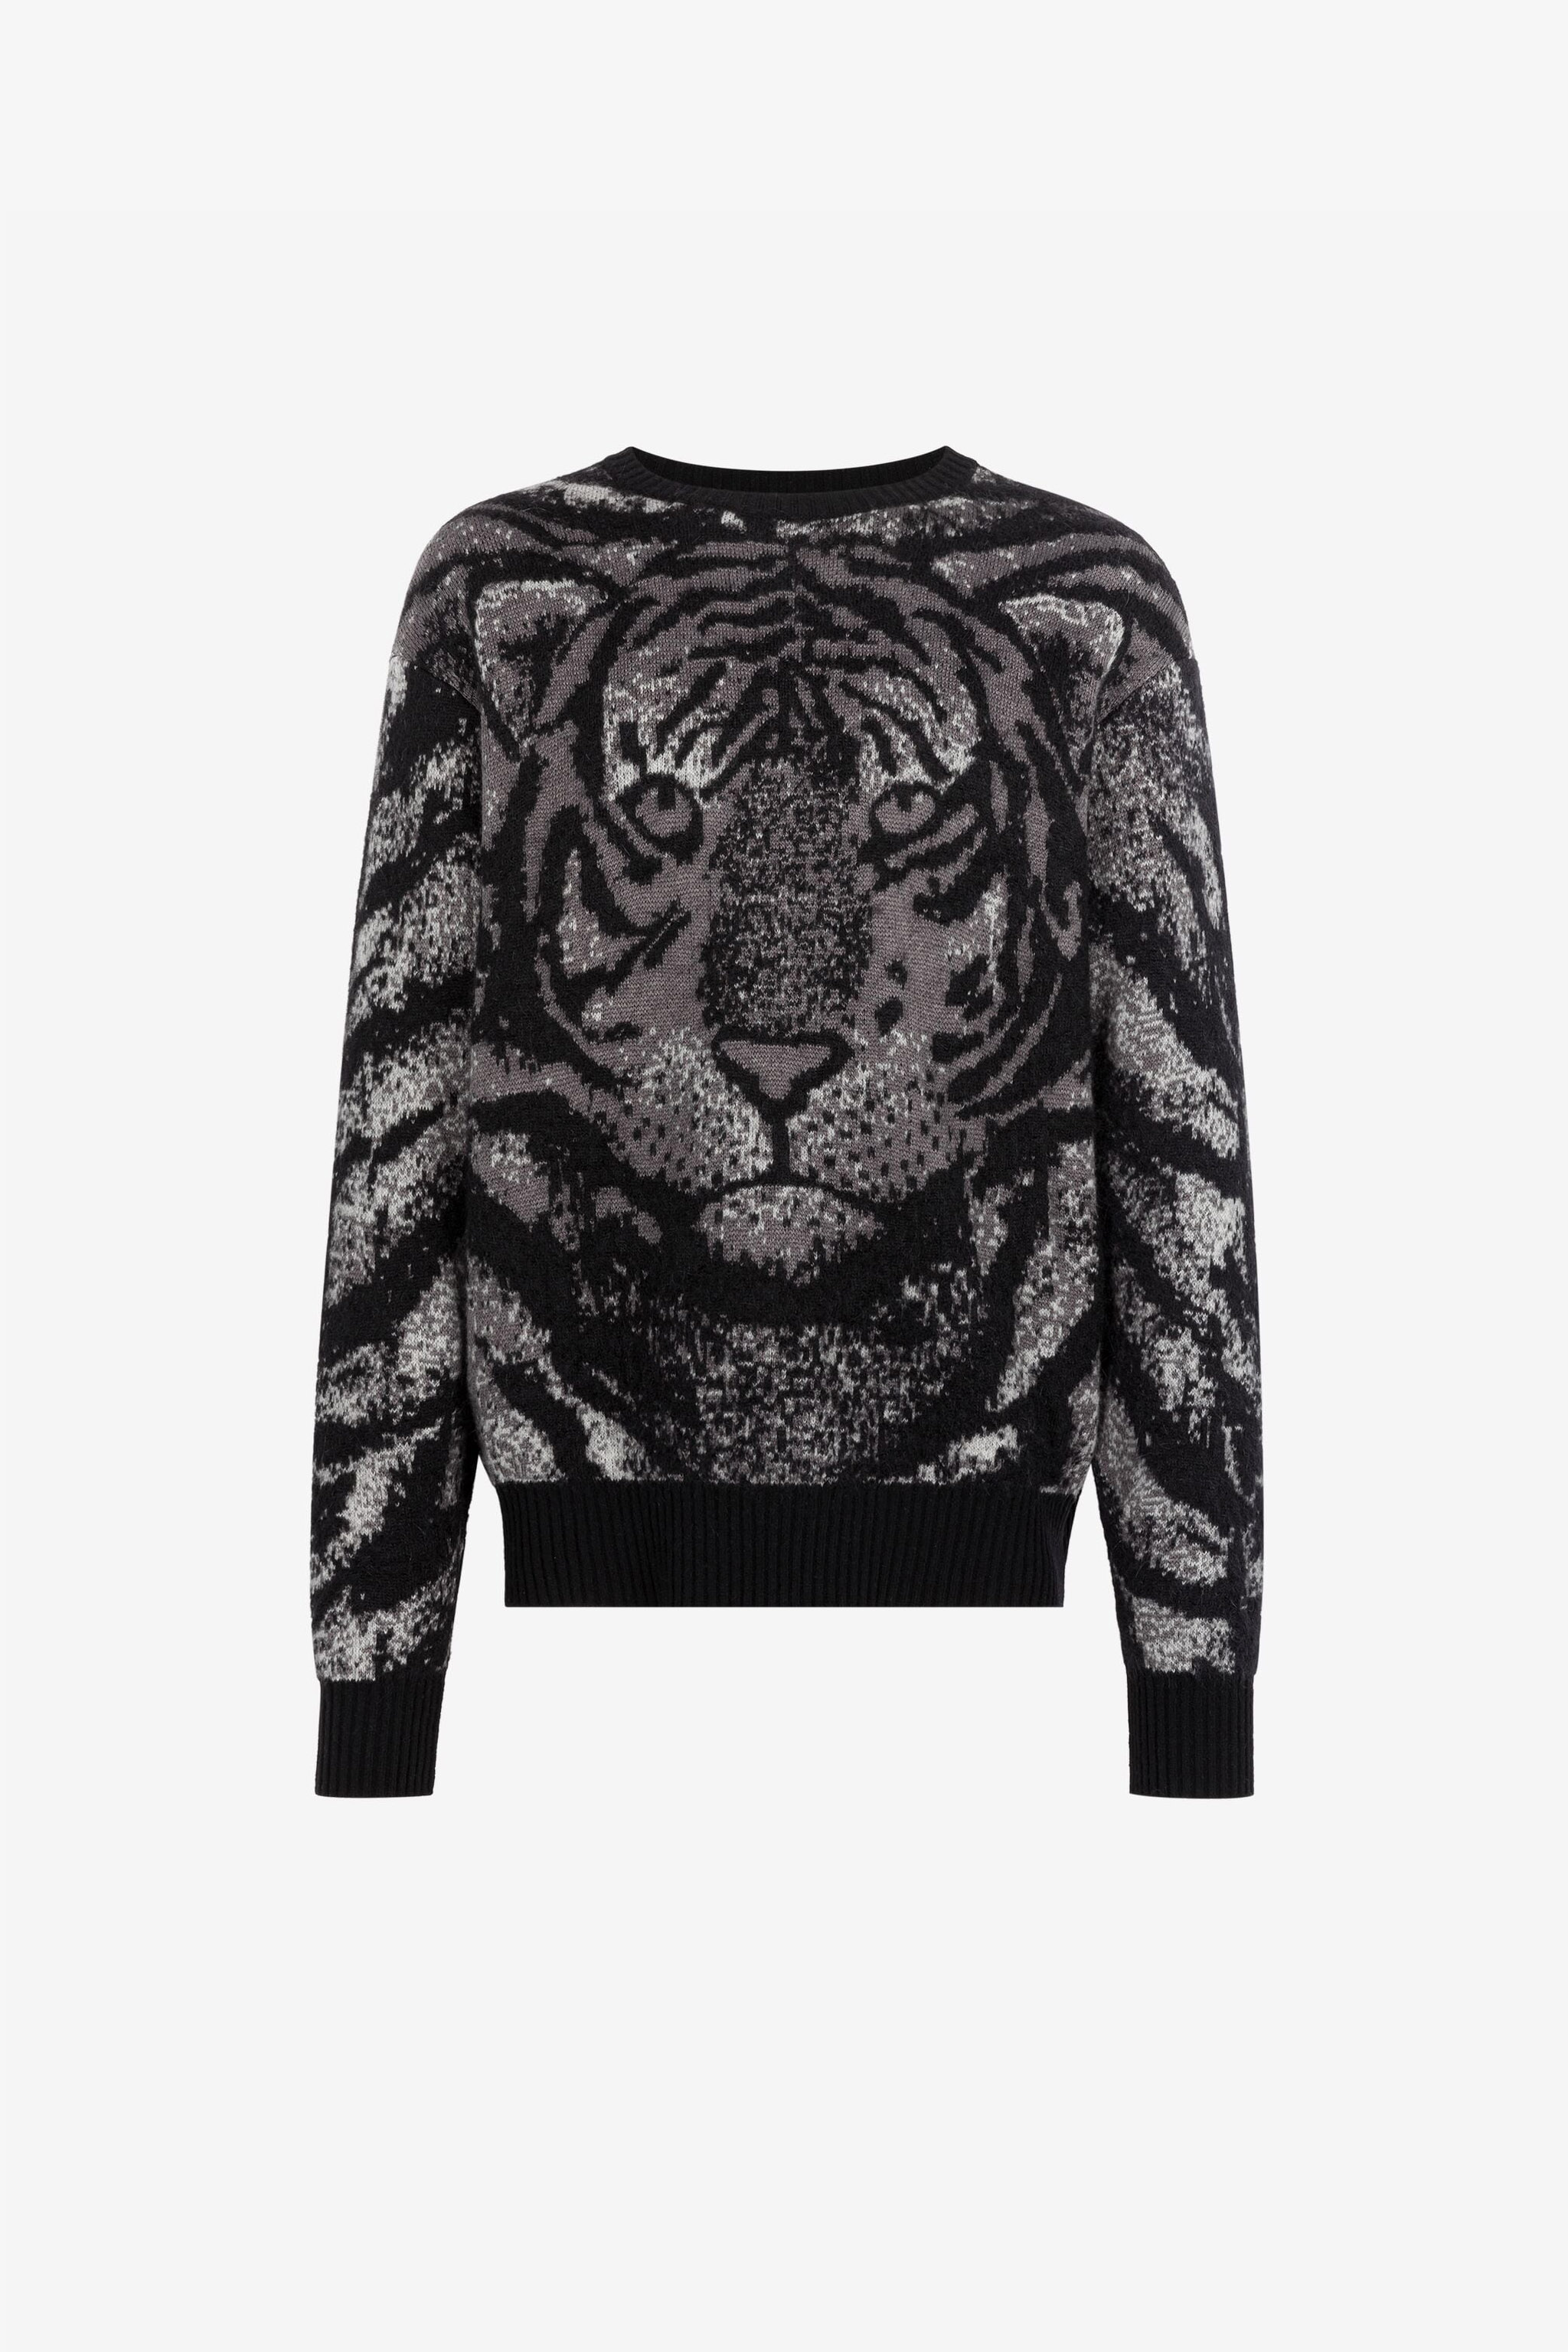 Tiger-Intarsia Sweater, MULTICOLOR, Men